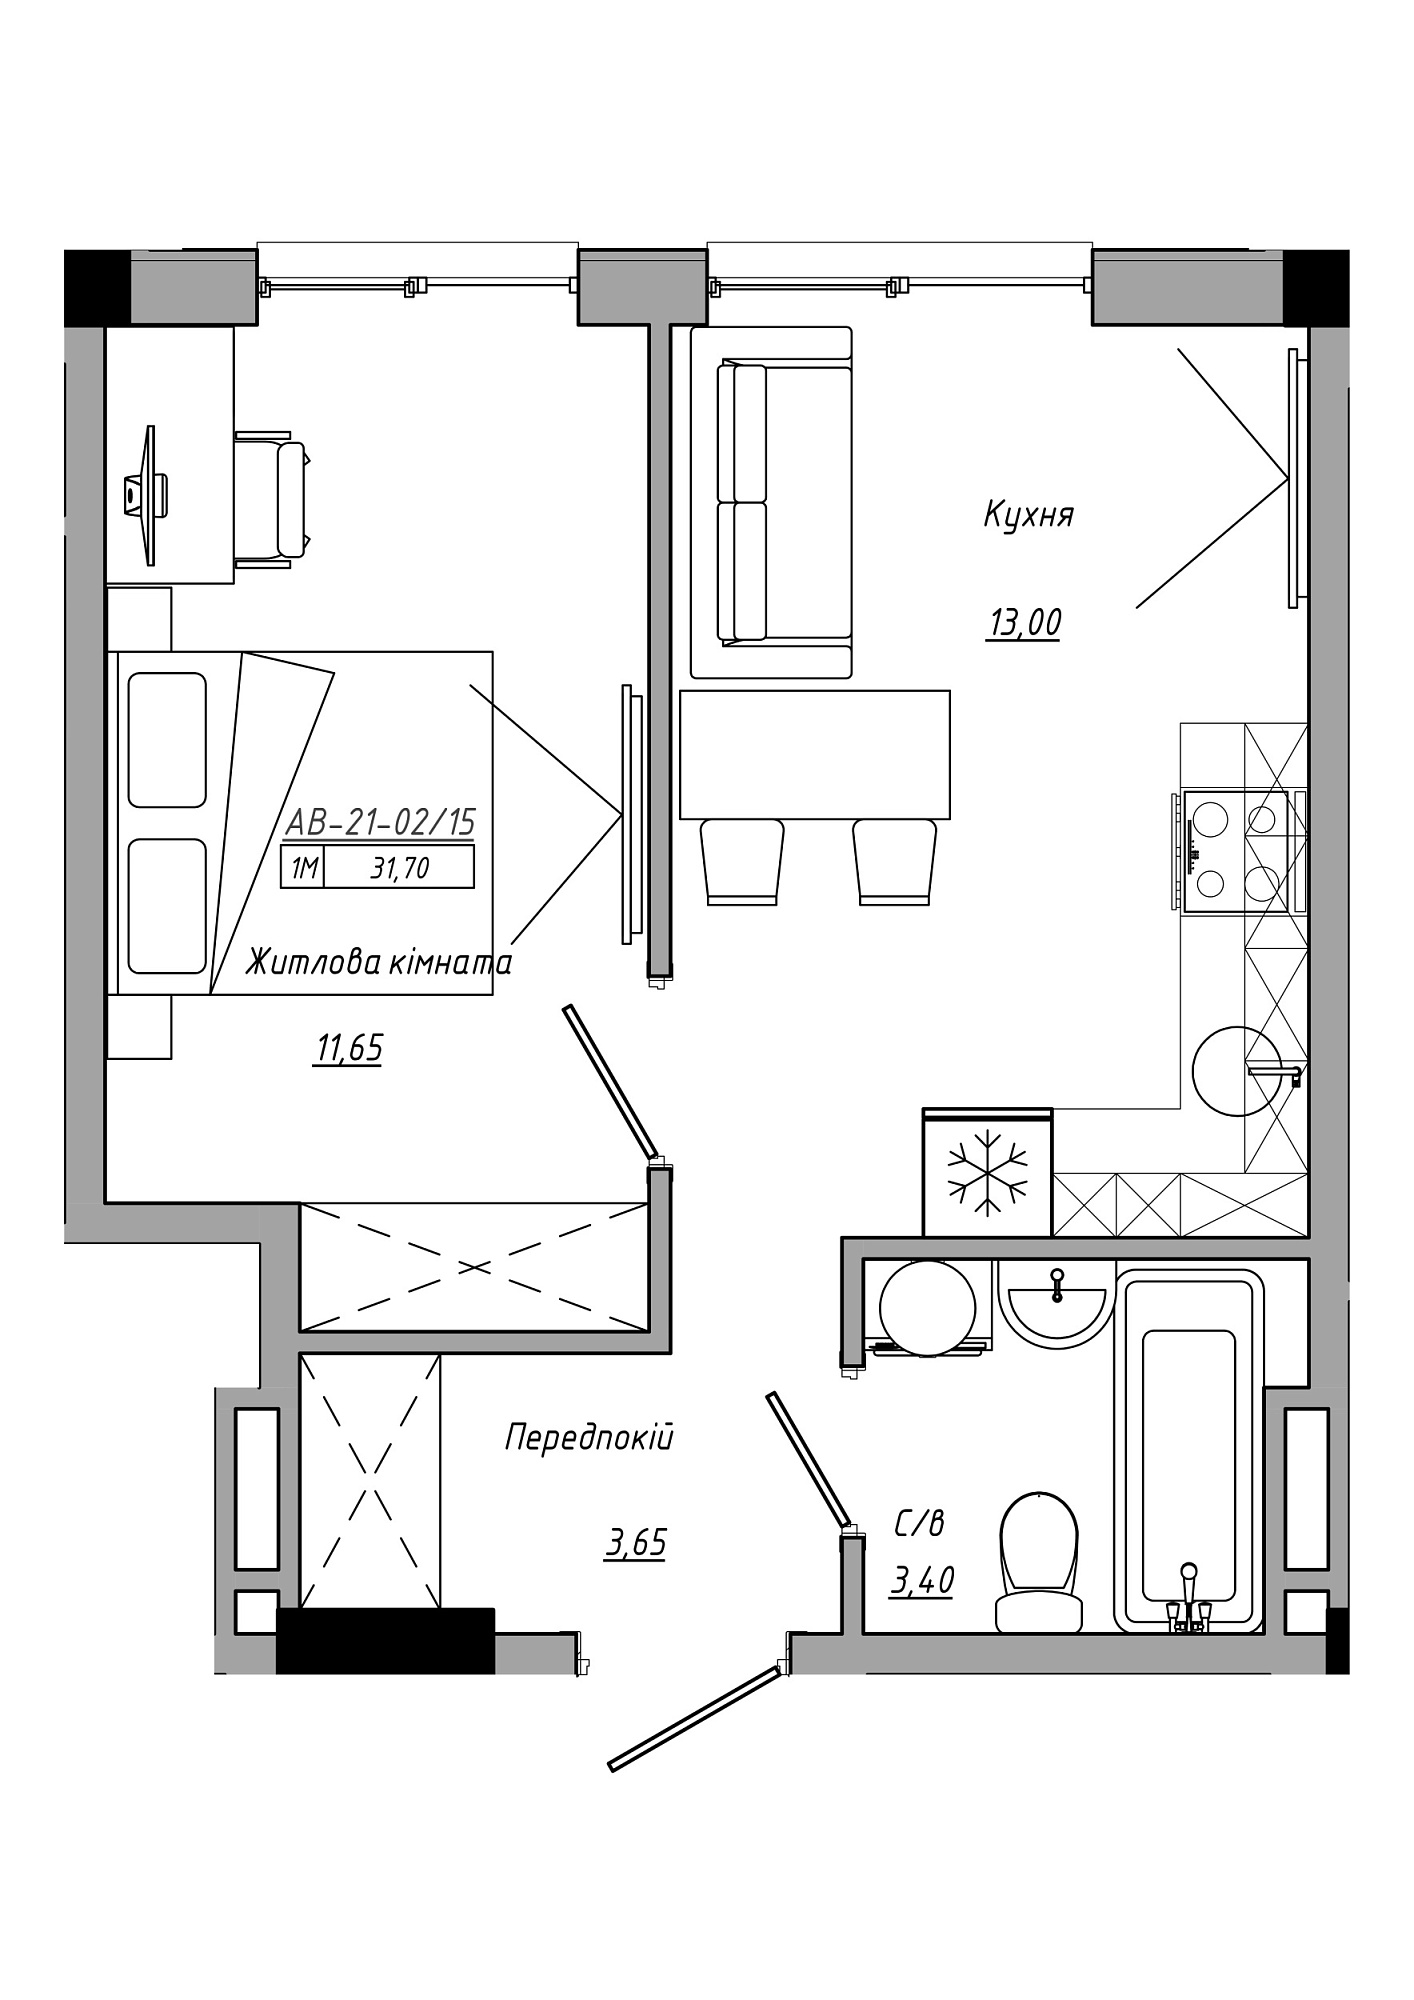 Планування 1-к квартира площею 31.7м2, AB-21-02/00015.